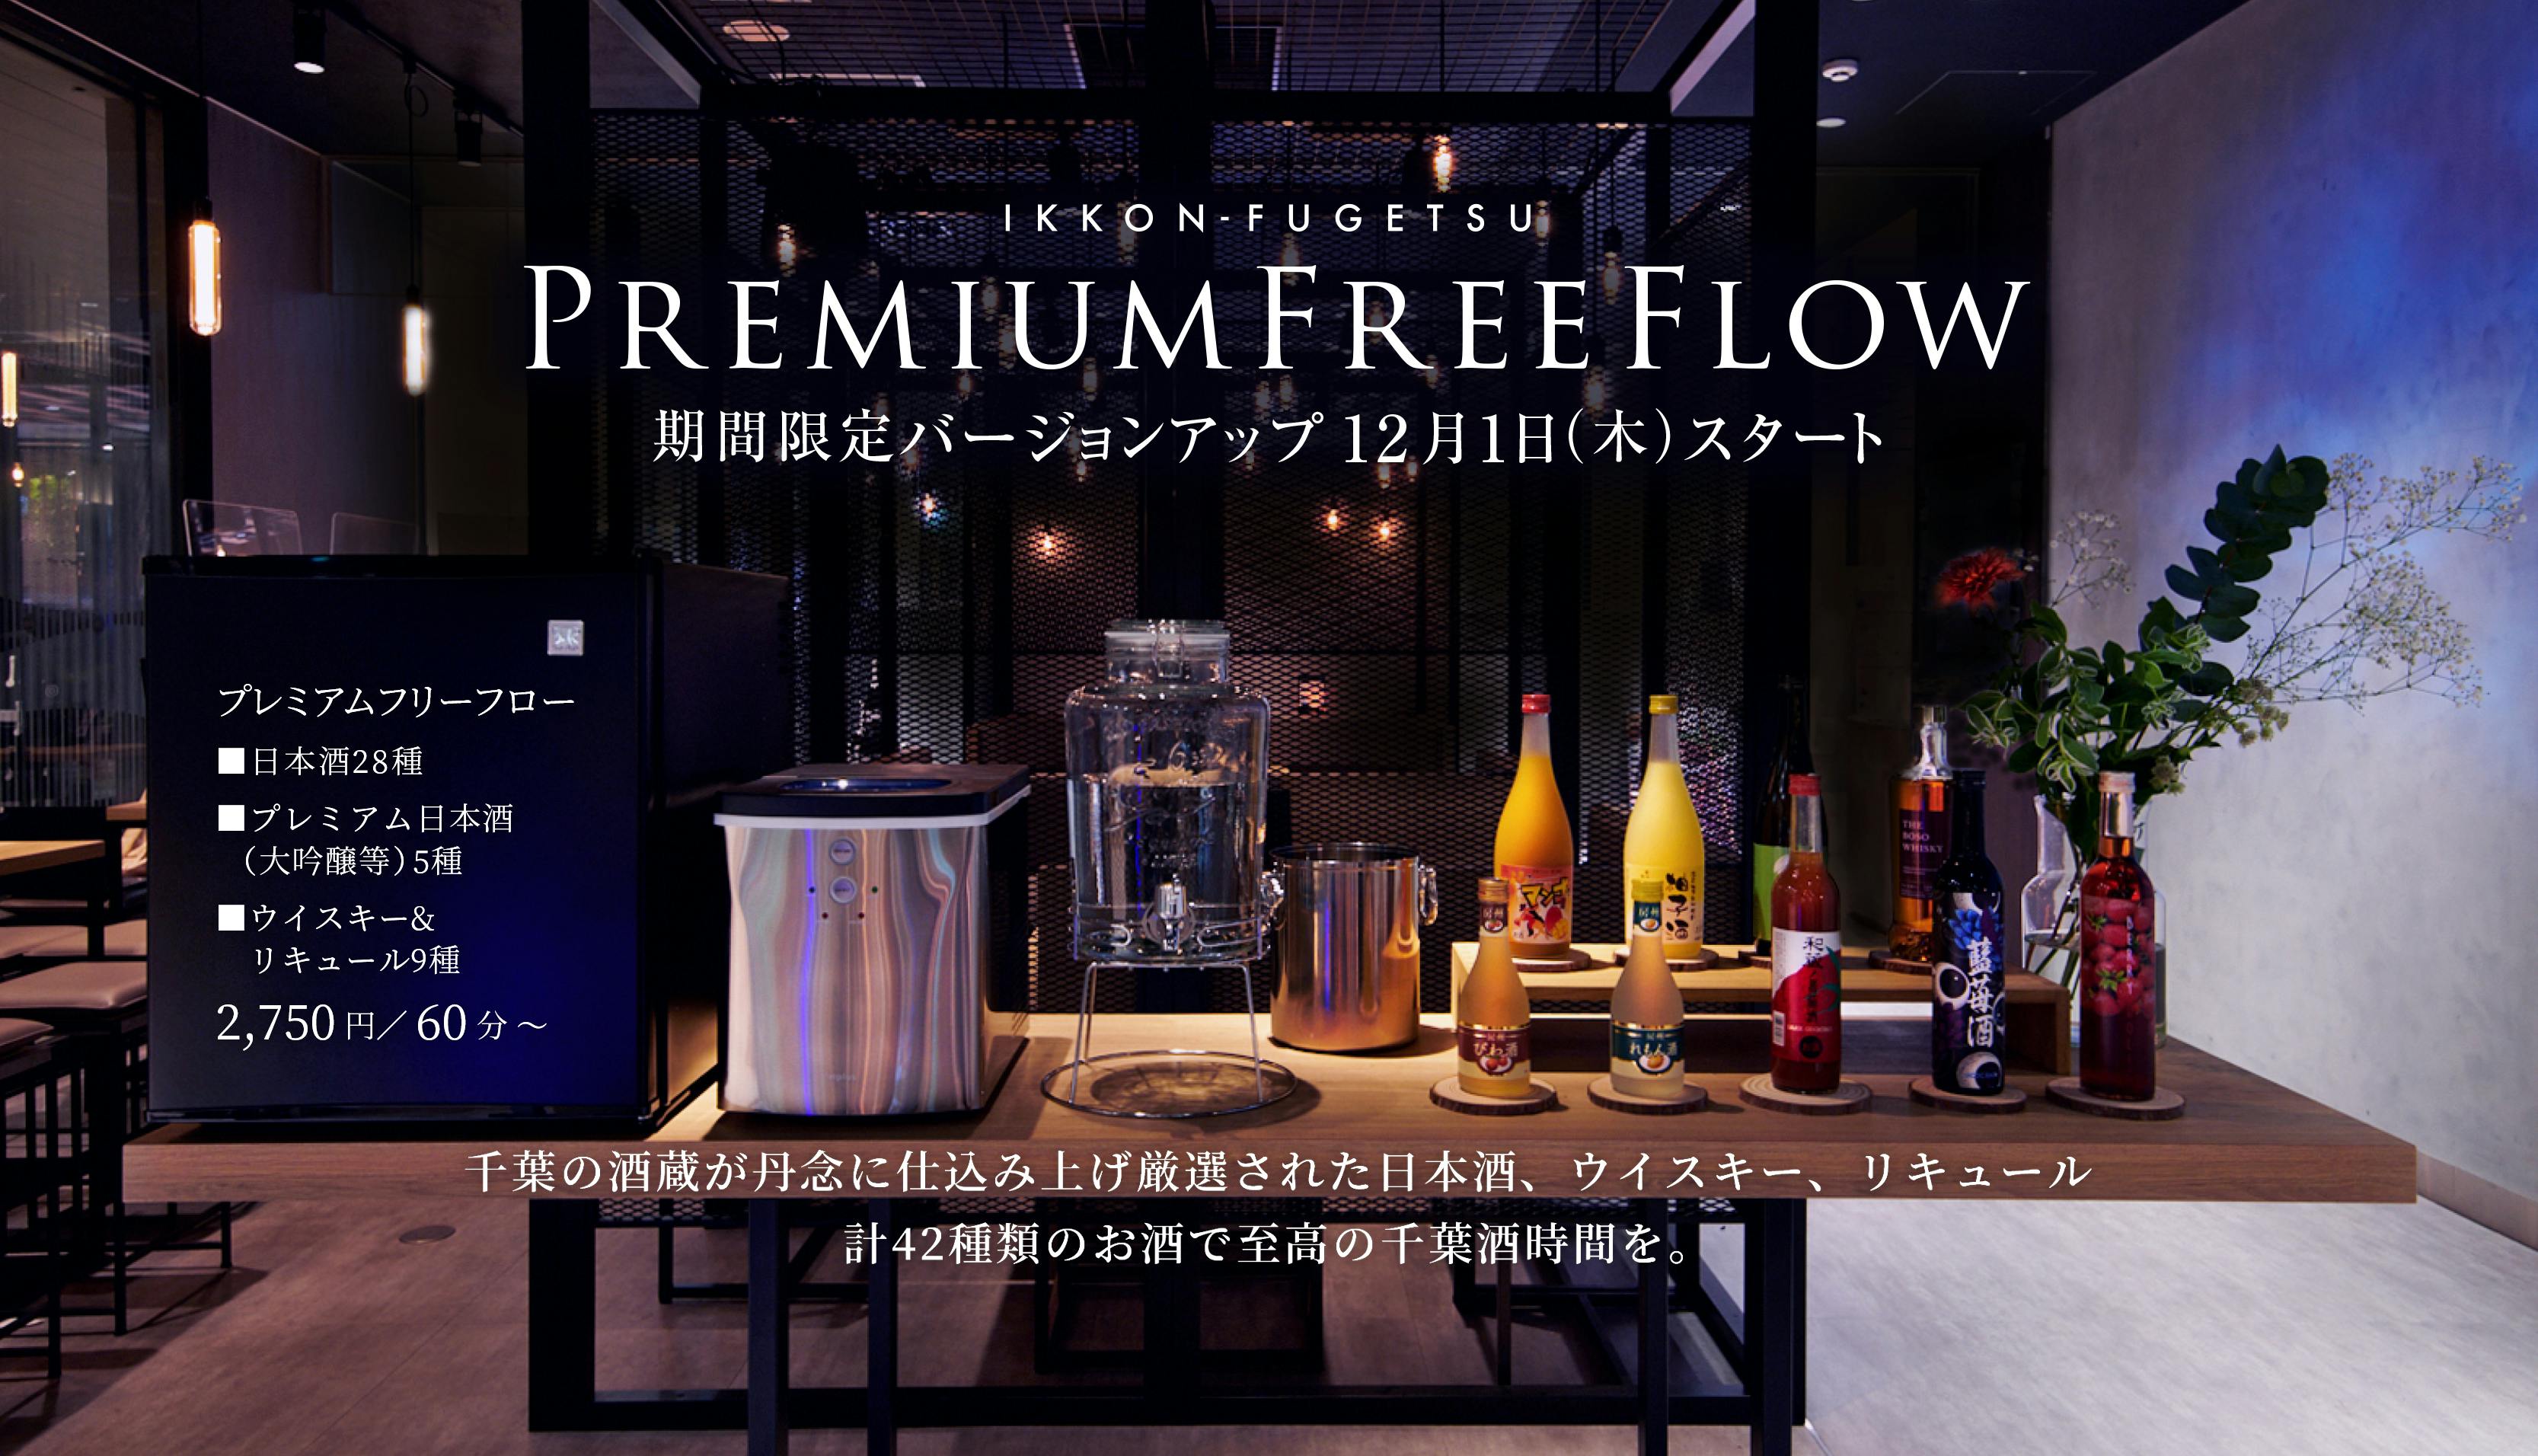 日本酒プレミアムラウンジ「一献風月」で千葉の酒蔵の厳選された日本酒、ウイスキー、果実リキュールが飲み放題に新登場！